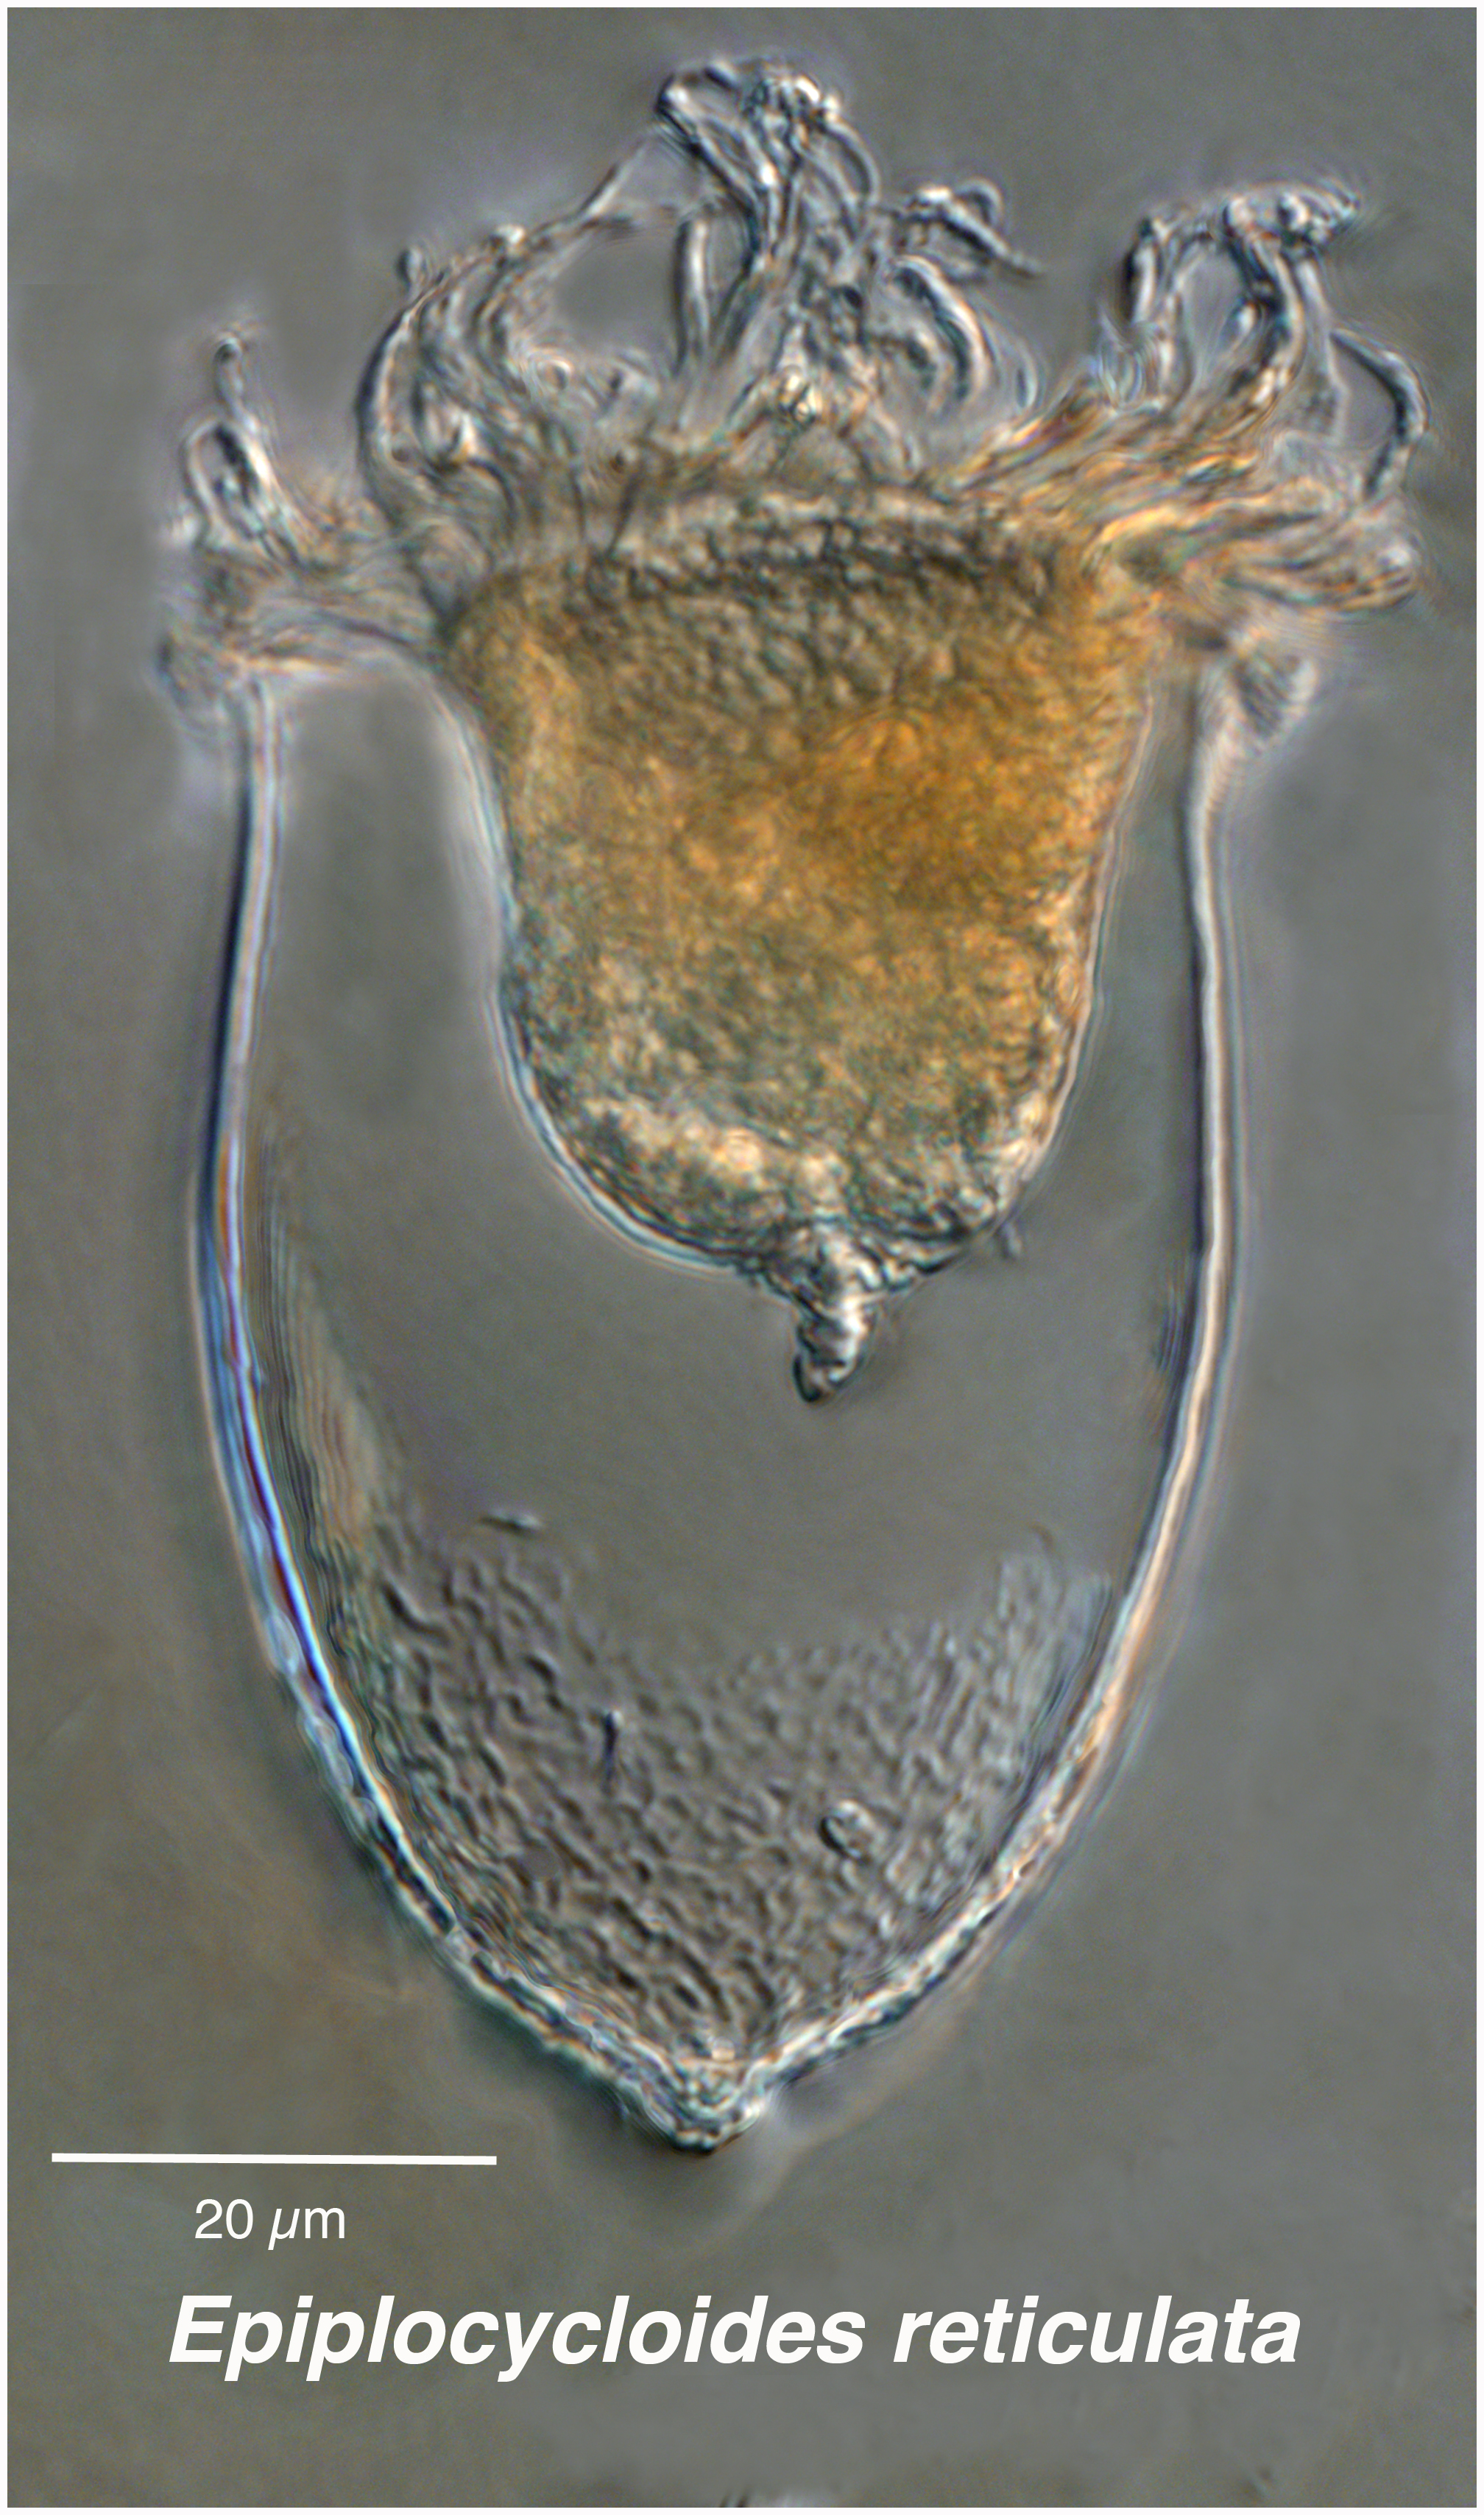 Epiplocyloides reticulata